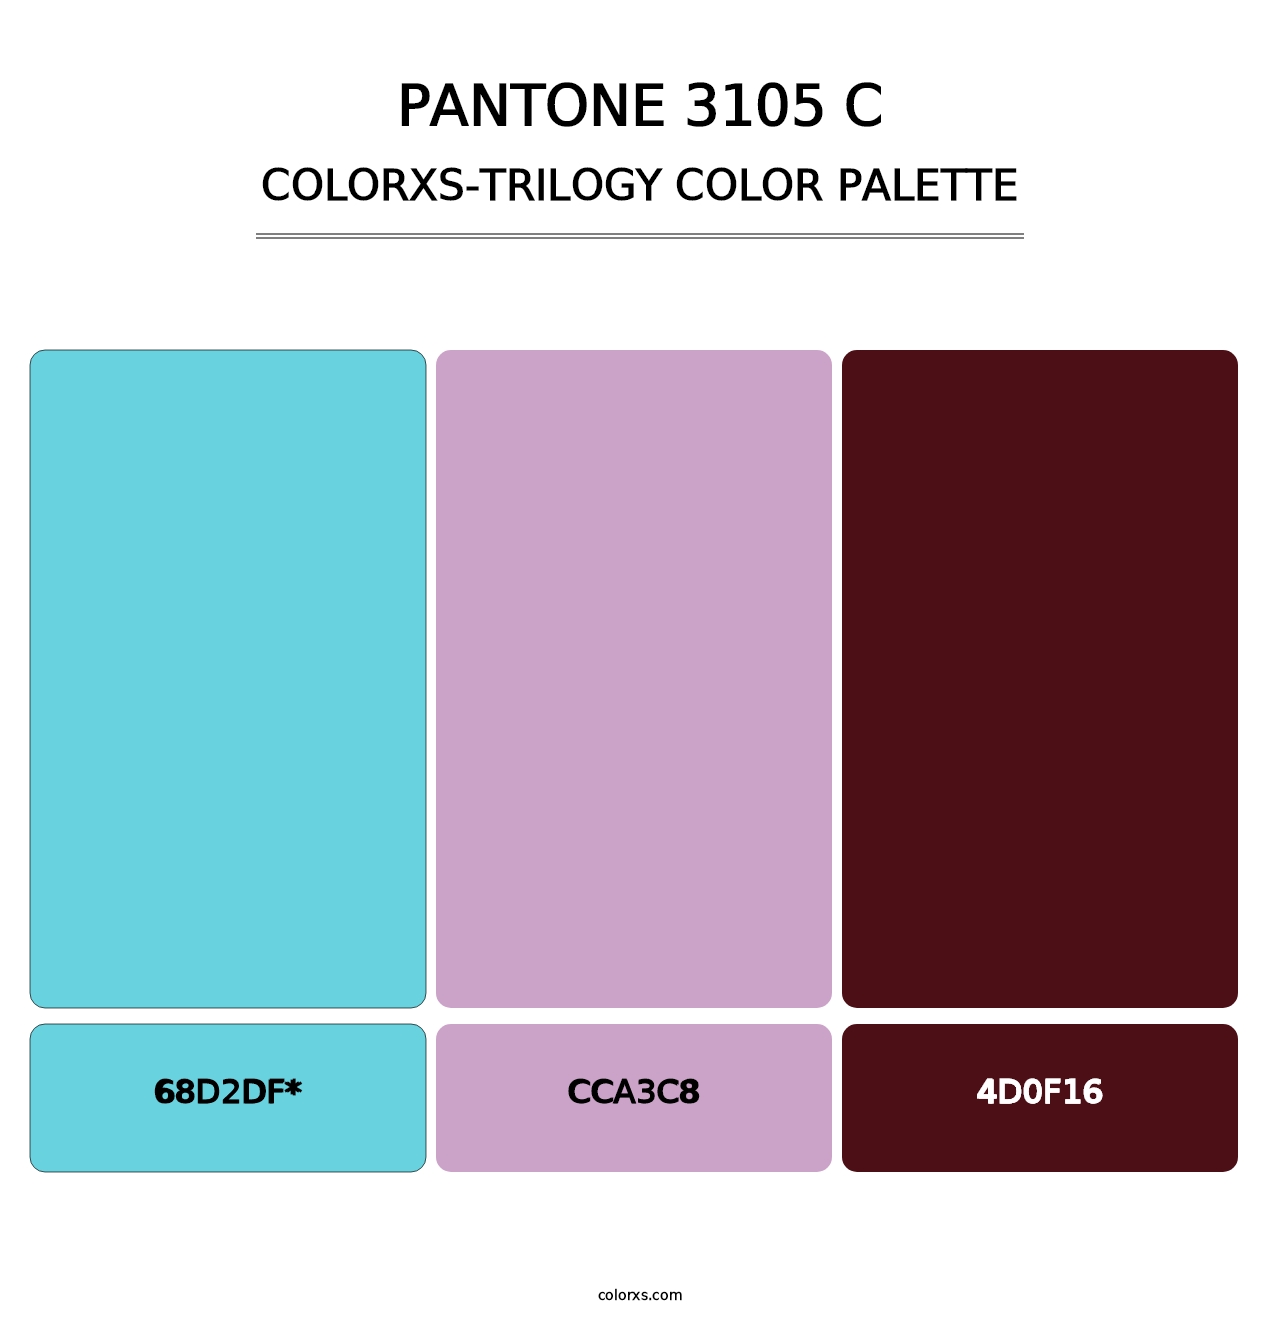 PANTONE 3105 C - Colorxs Trilogy Palette